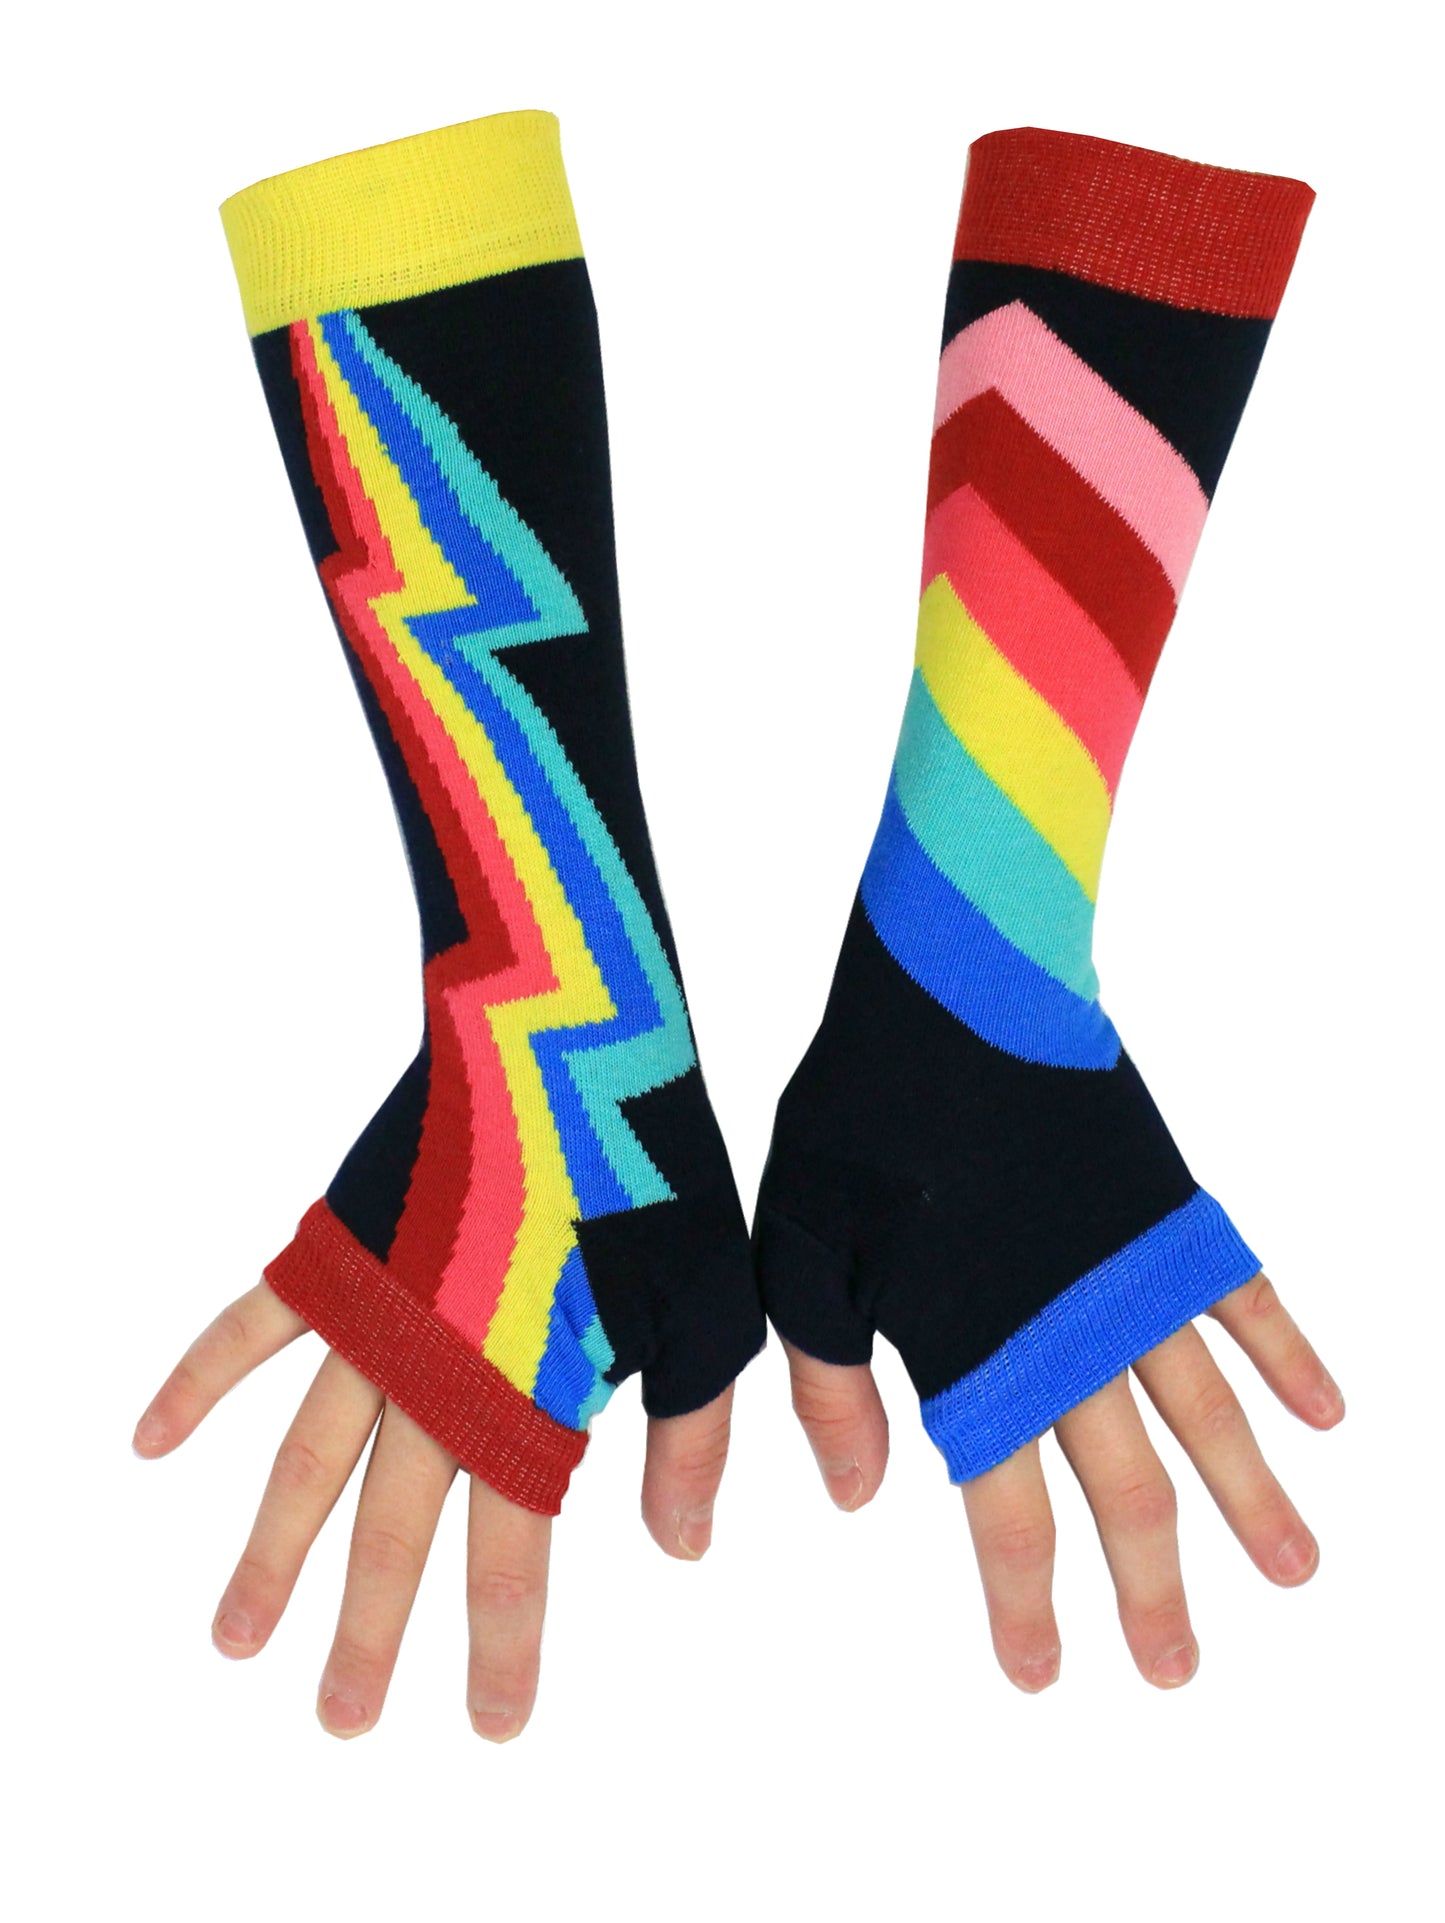 United OddSocks Ladies Girls Long Arm Warmers/Fingerless Gloves-5 Designs